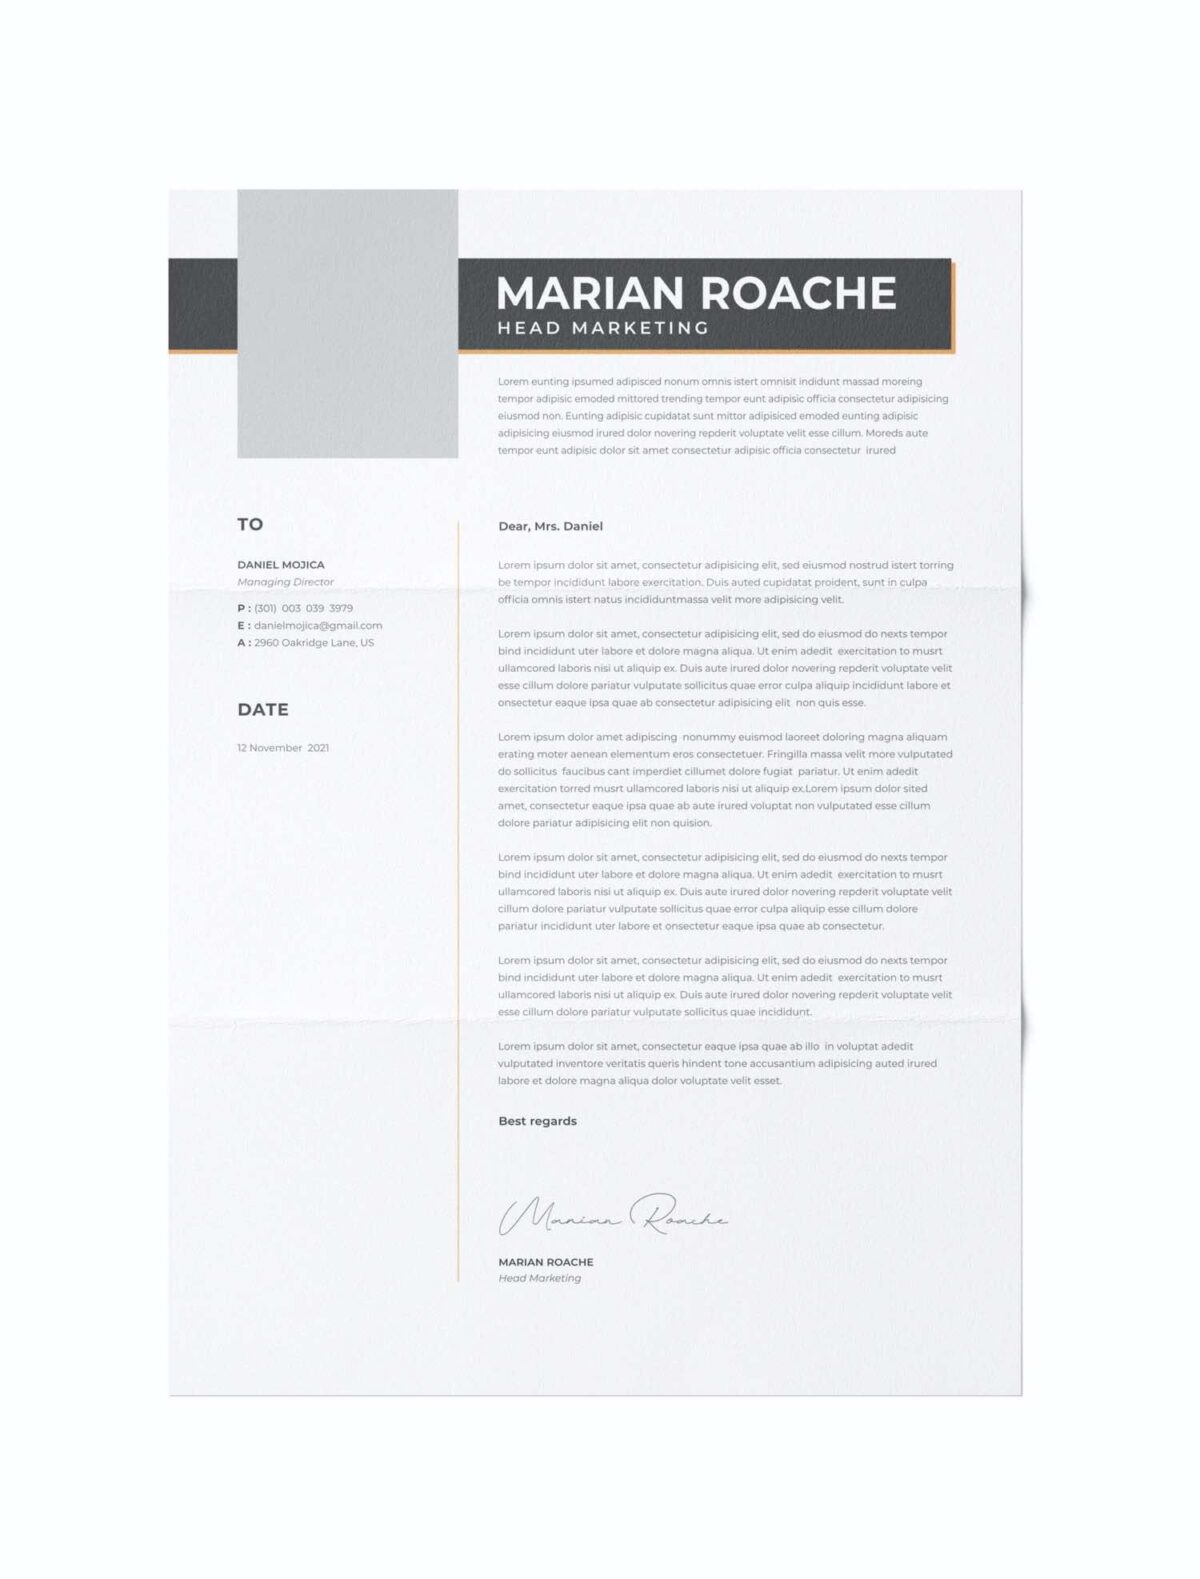 CV #34 Marian Roache